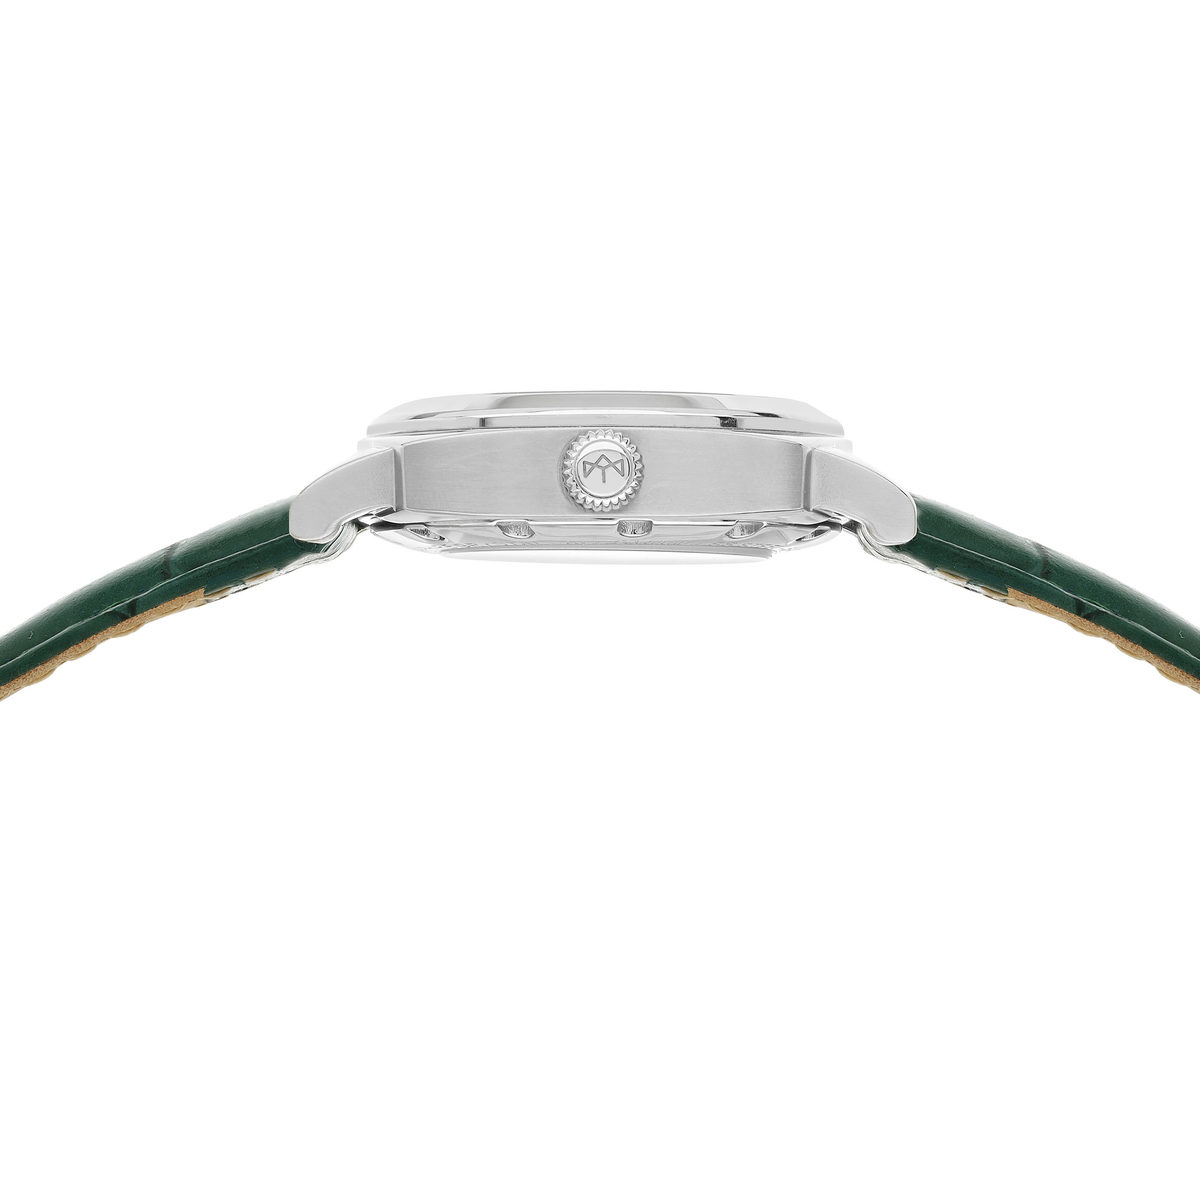 Montre MATY GM automatique cadran vert bracelet cuir vert - vue 6